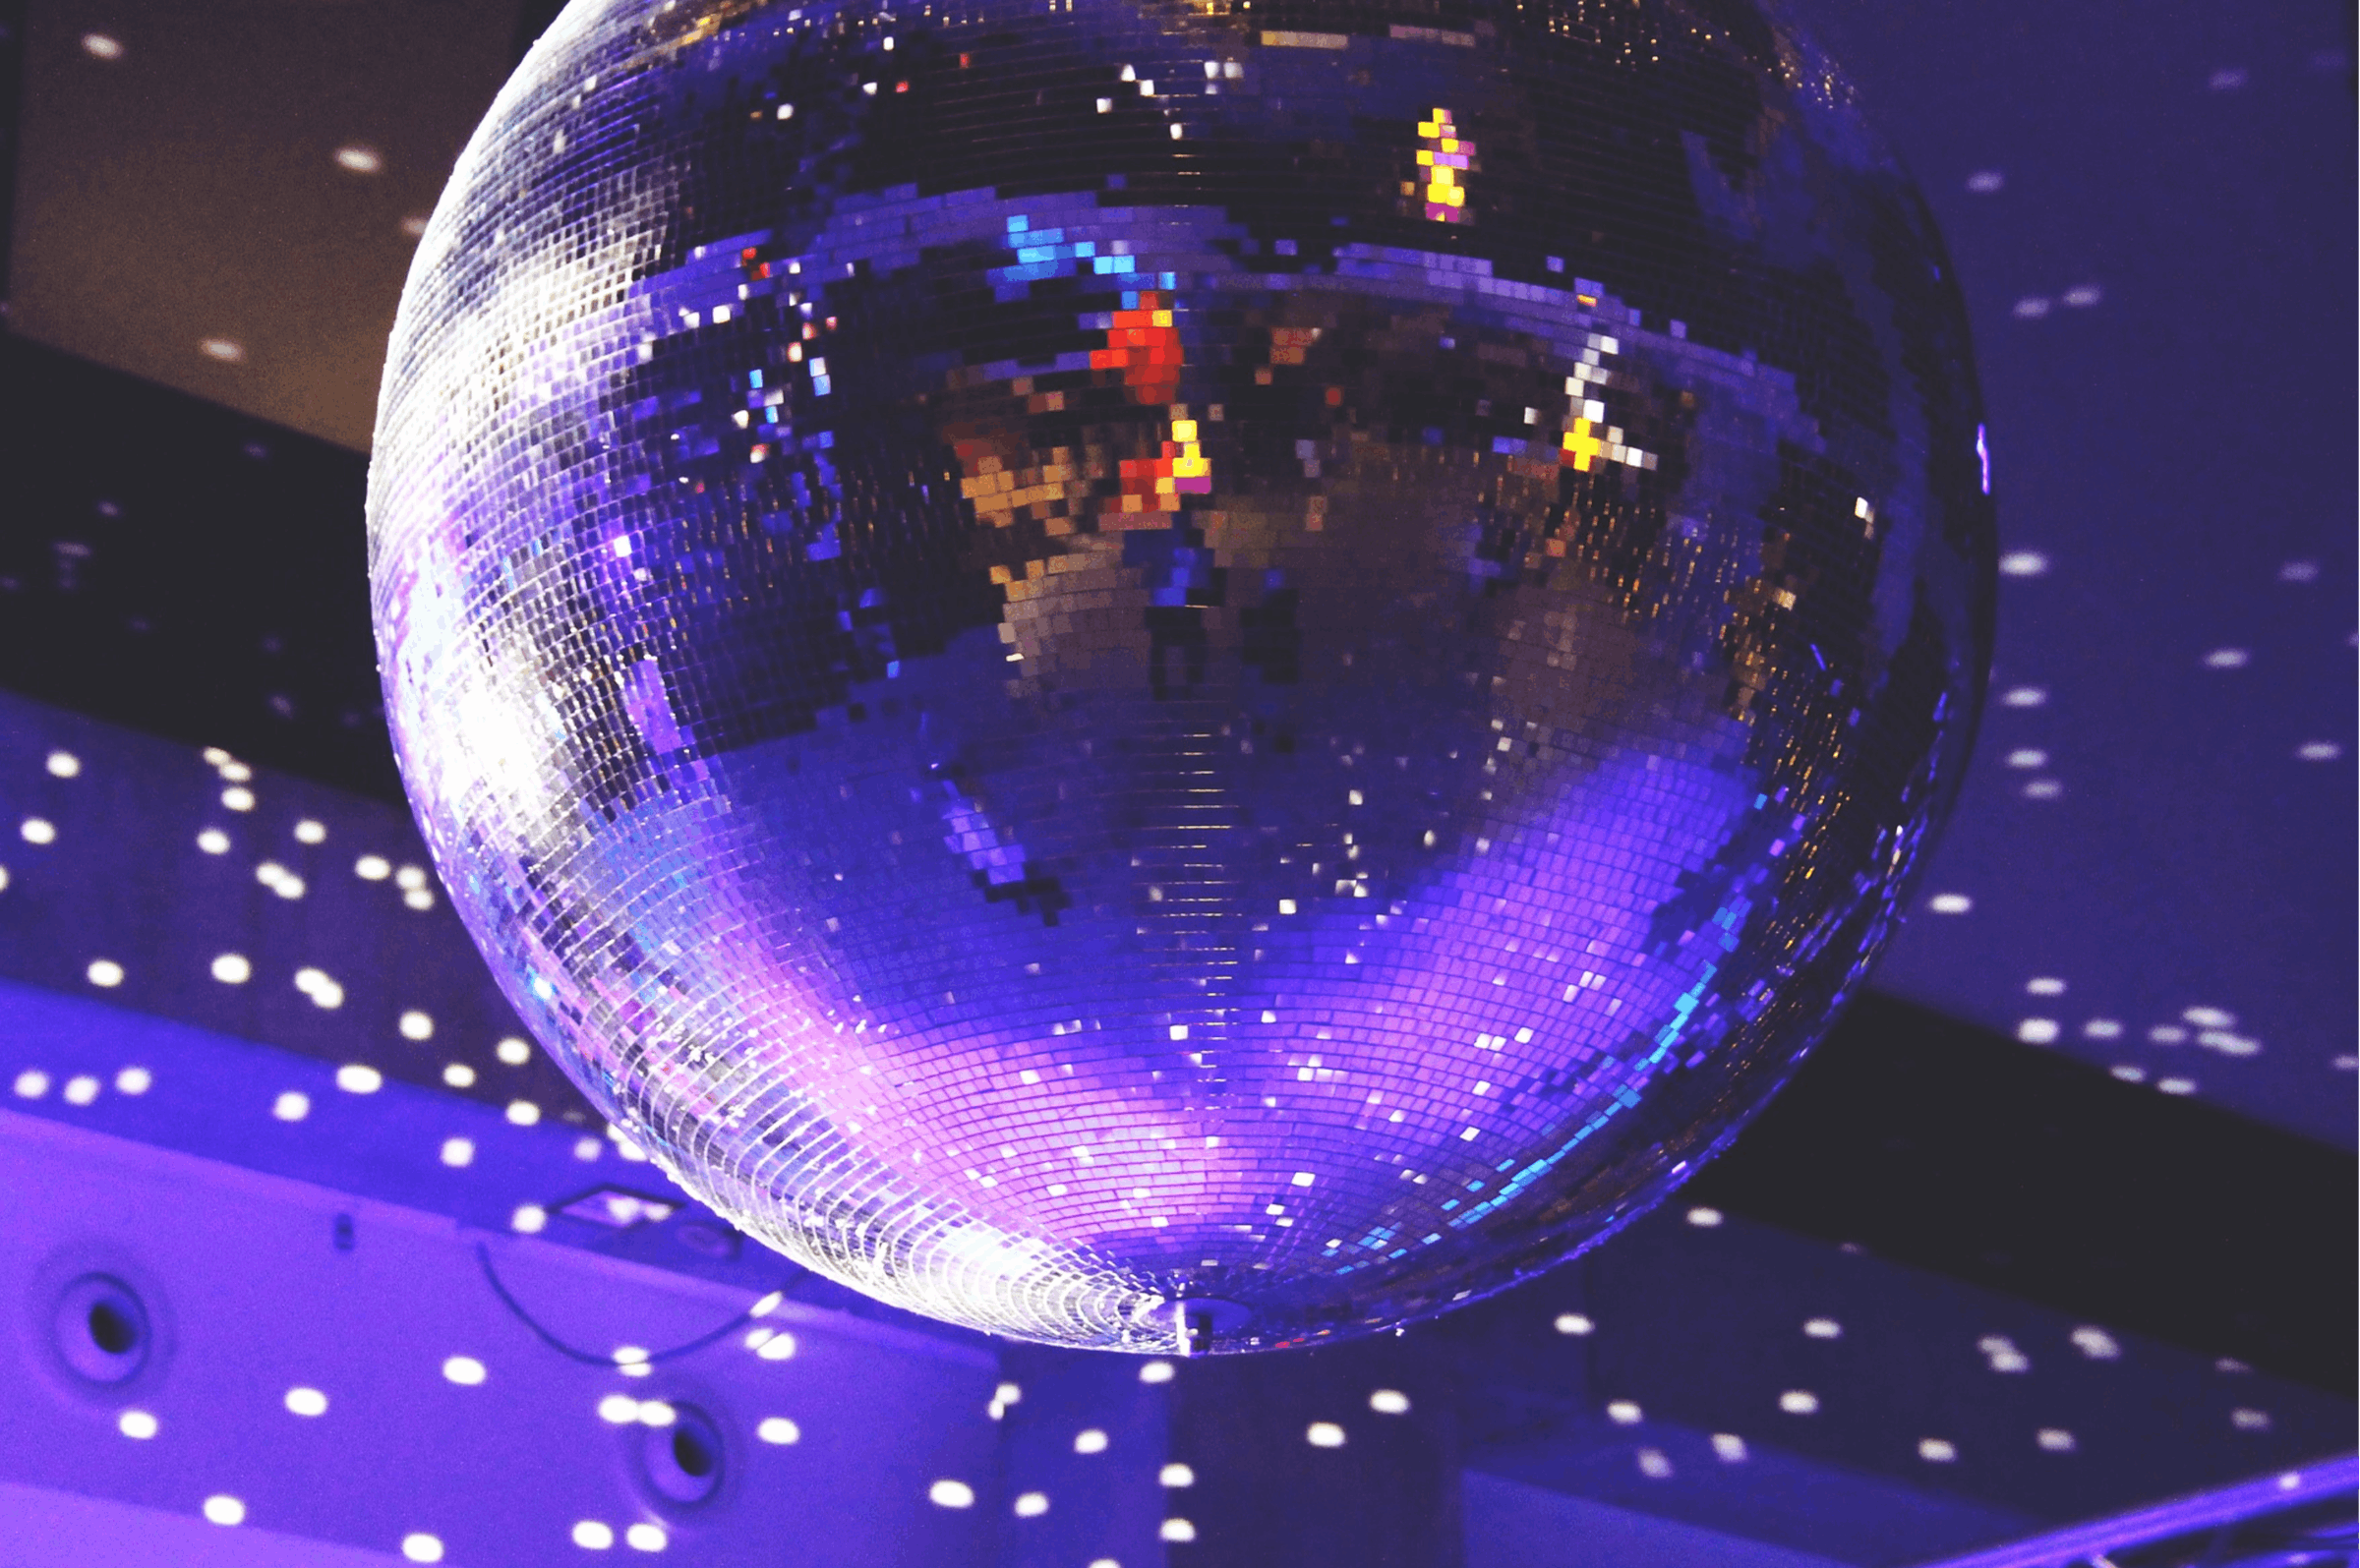 Kuvassa discopallo pyörii katossa heijastaen sinisen ja liilan sävyjä ympärilleen.